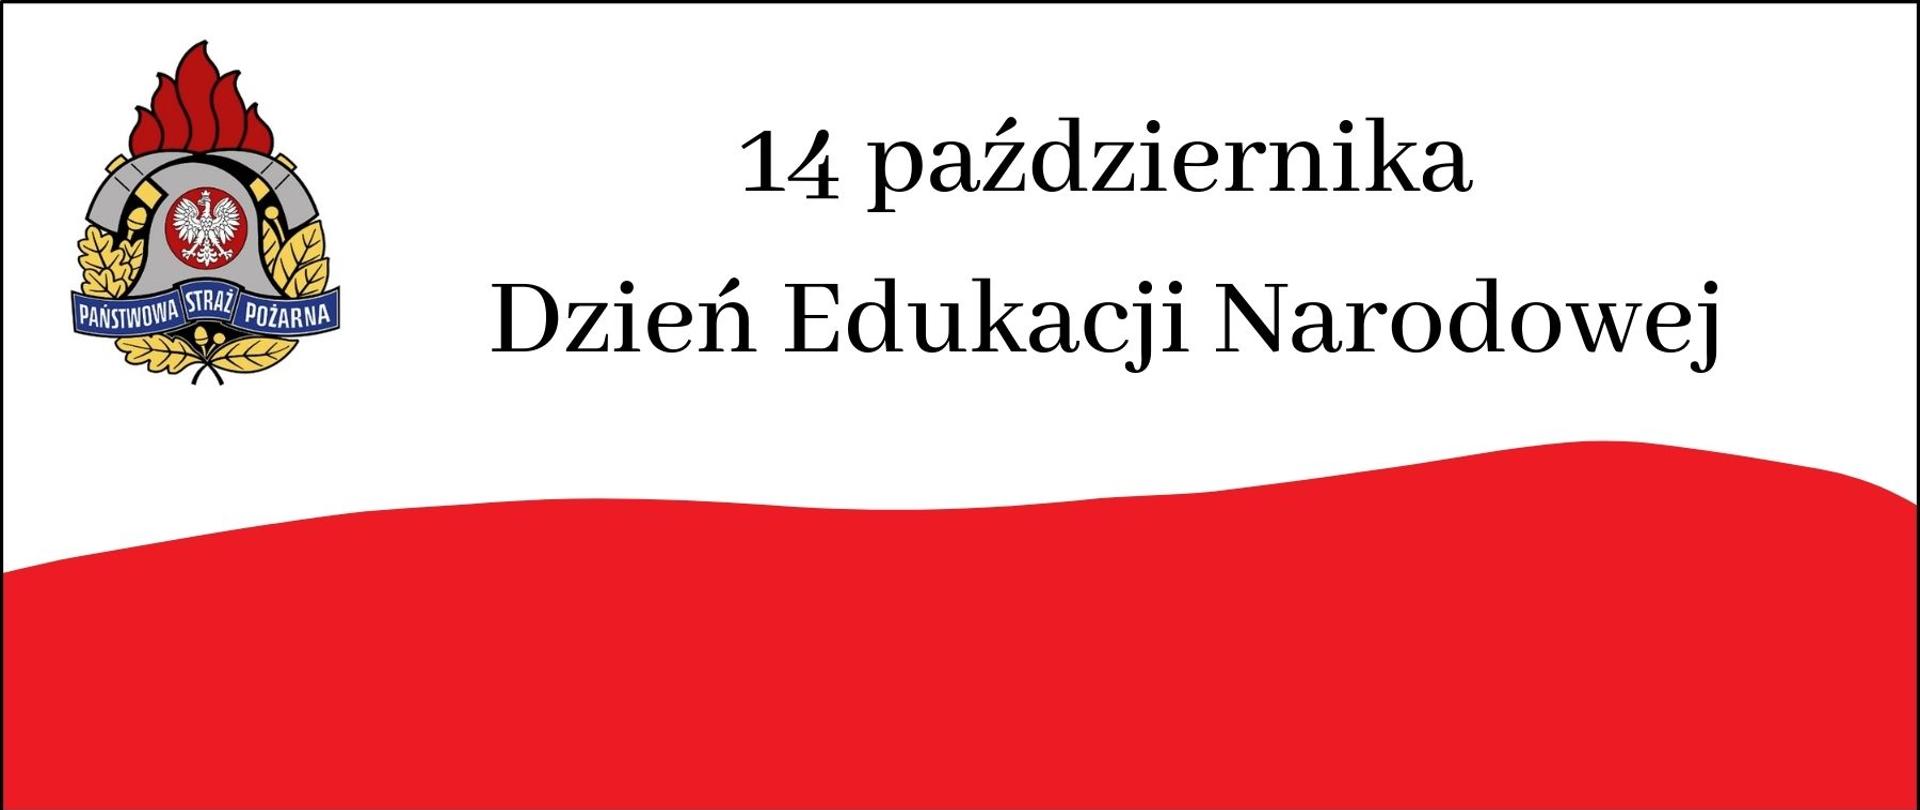 Flaga z logiem PSP i napisem 14 października Dzień Edukacji Narodowej. 